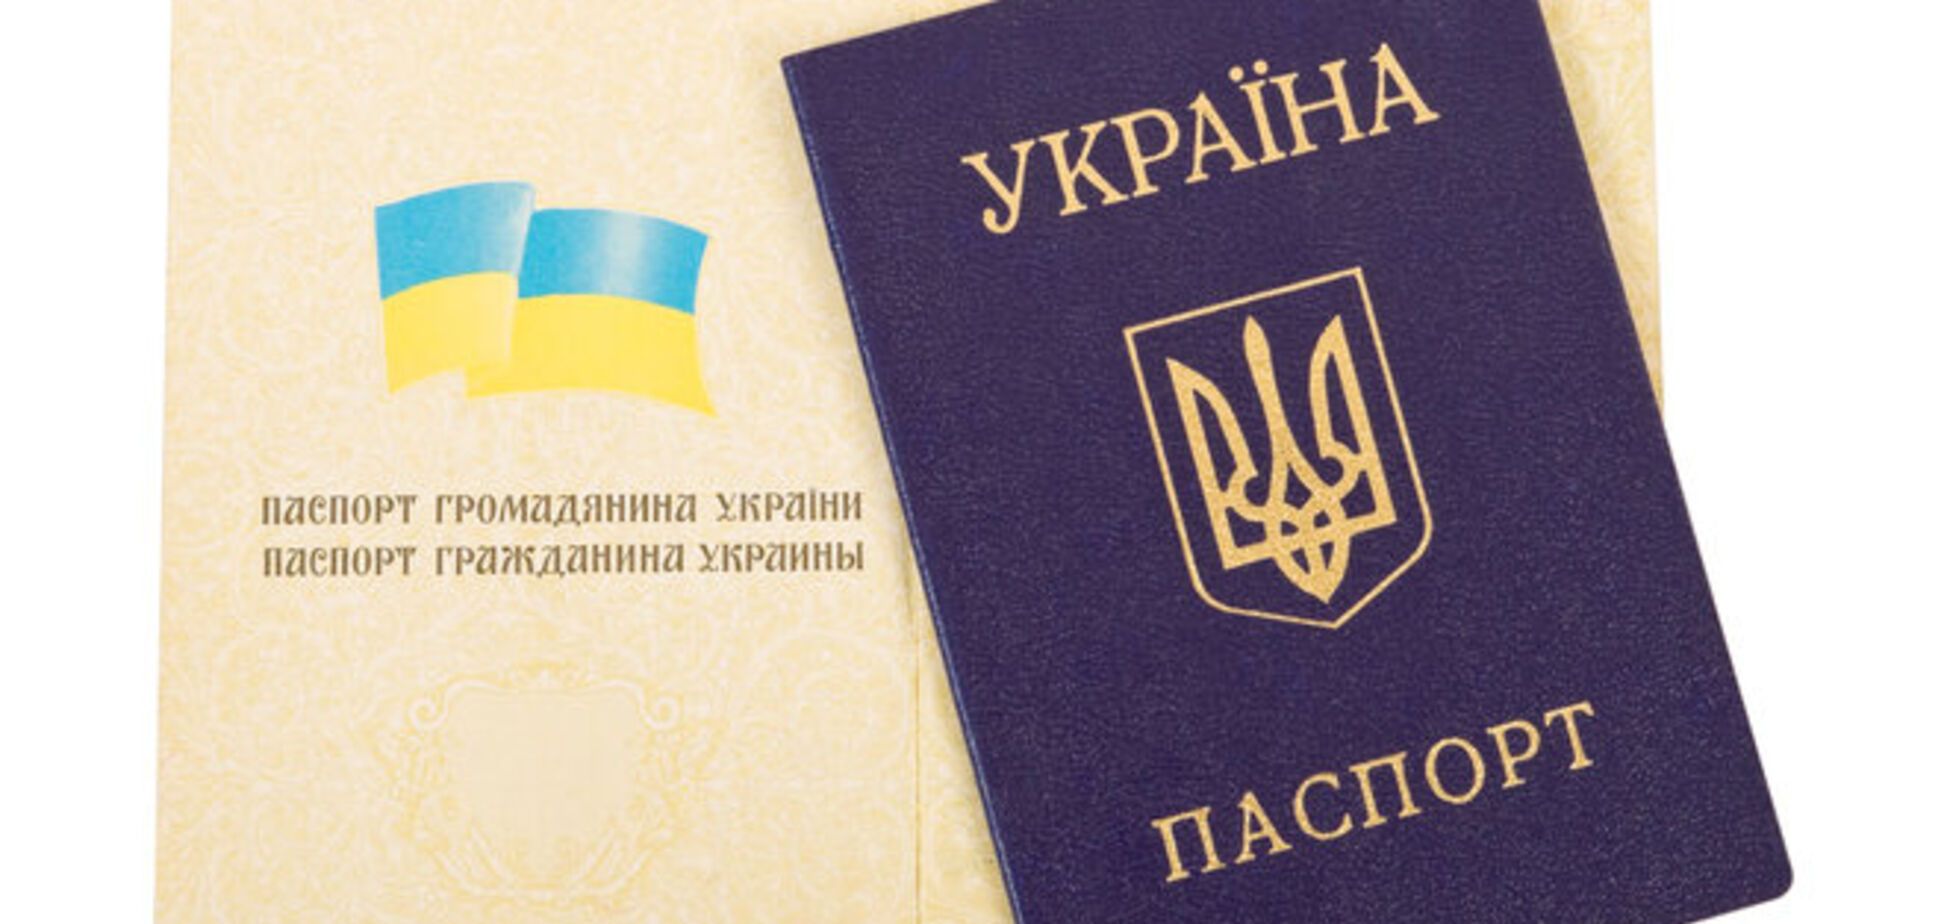 В Винницкой области массово выдавали бюллетени без паспортов